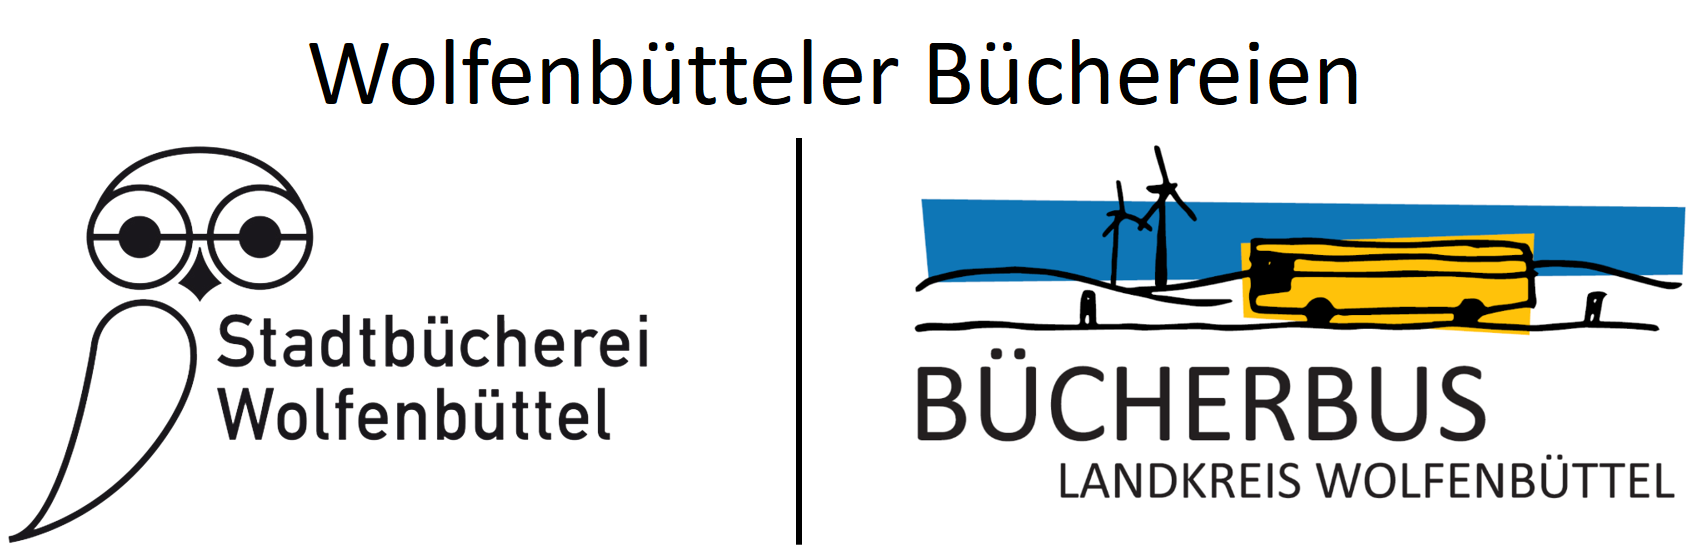 Logos der Stadtbücherei Wolfenbüttel und des Bücherbusses Wolfenbüttel mit dem Schriftzug Wolfenbütteler Büchereien